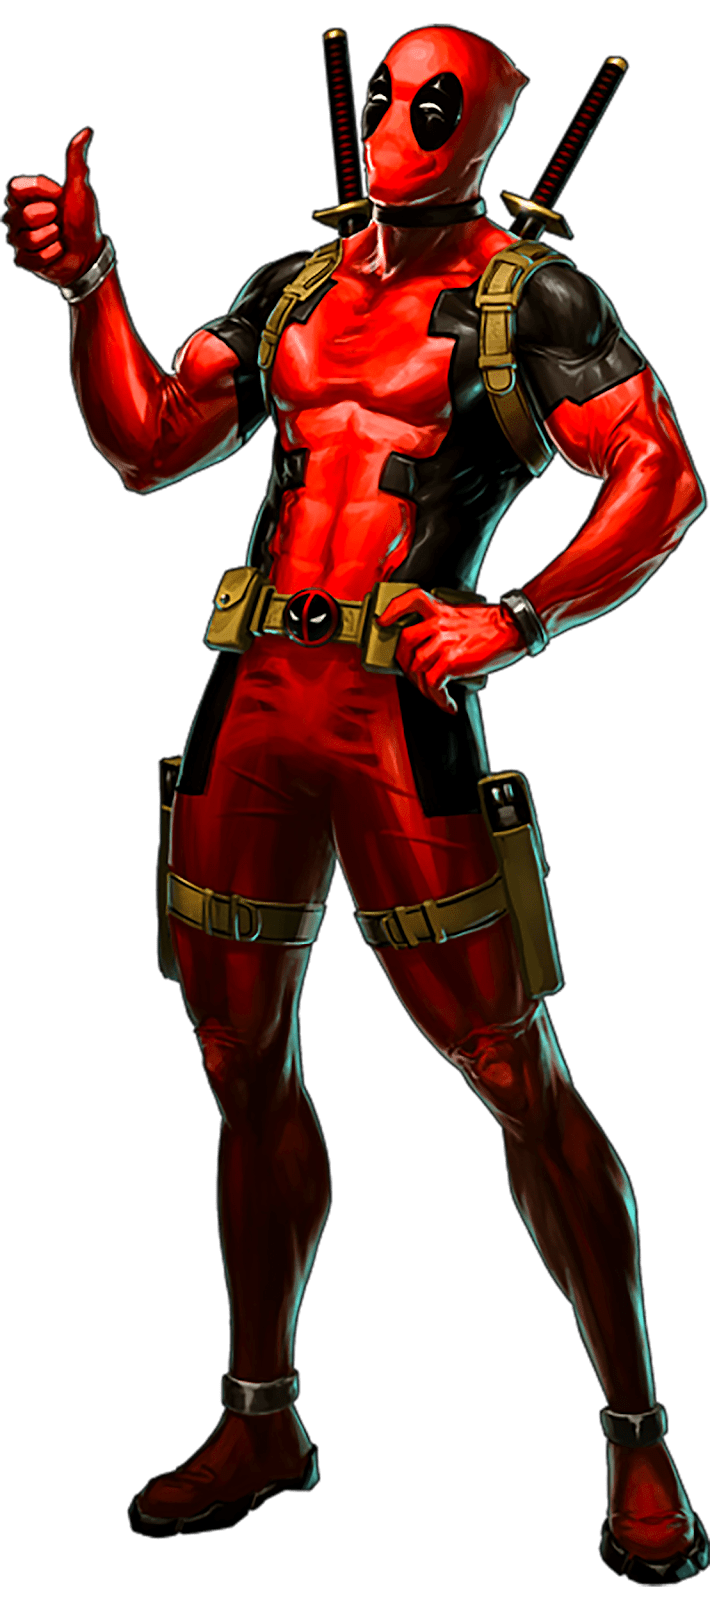 imagen Gigante de los personajes de Deadpool  en png con fondo transparente